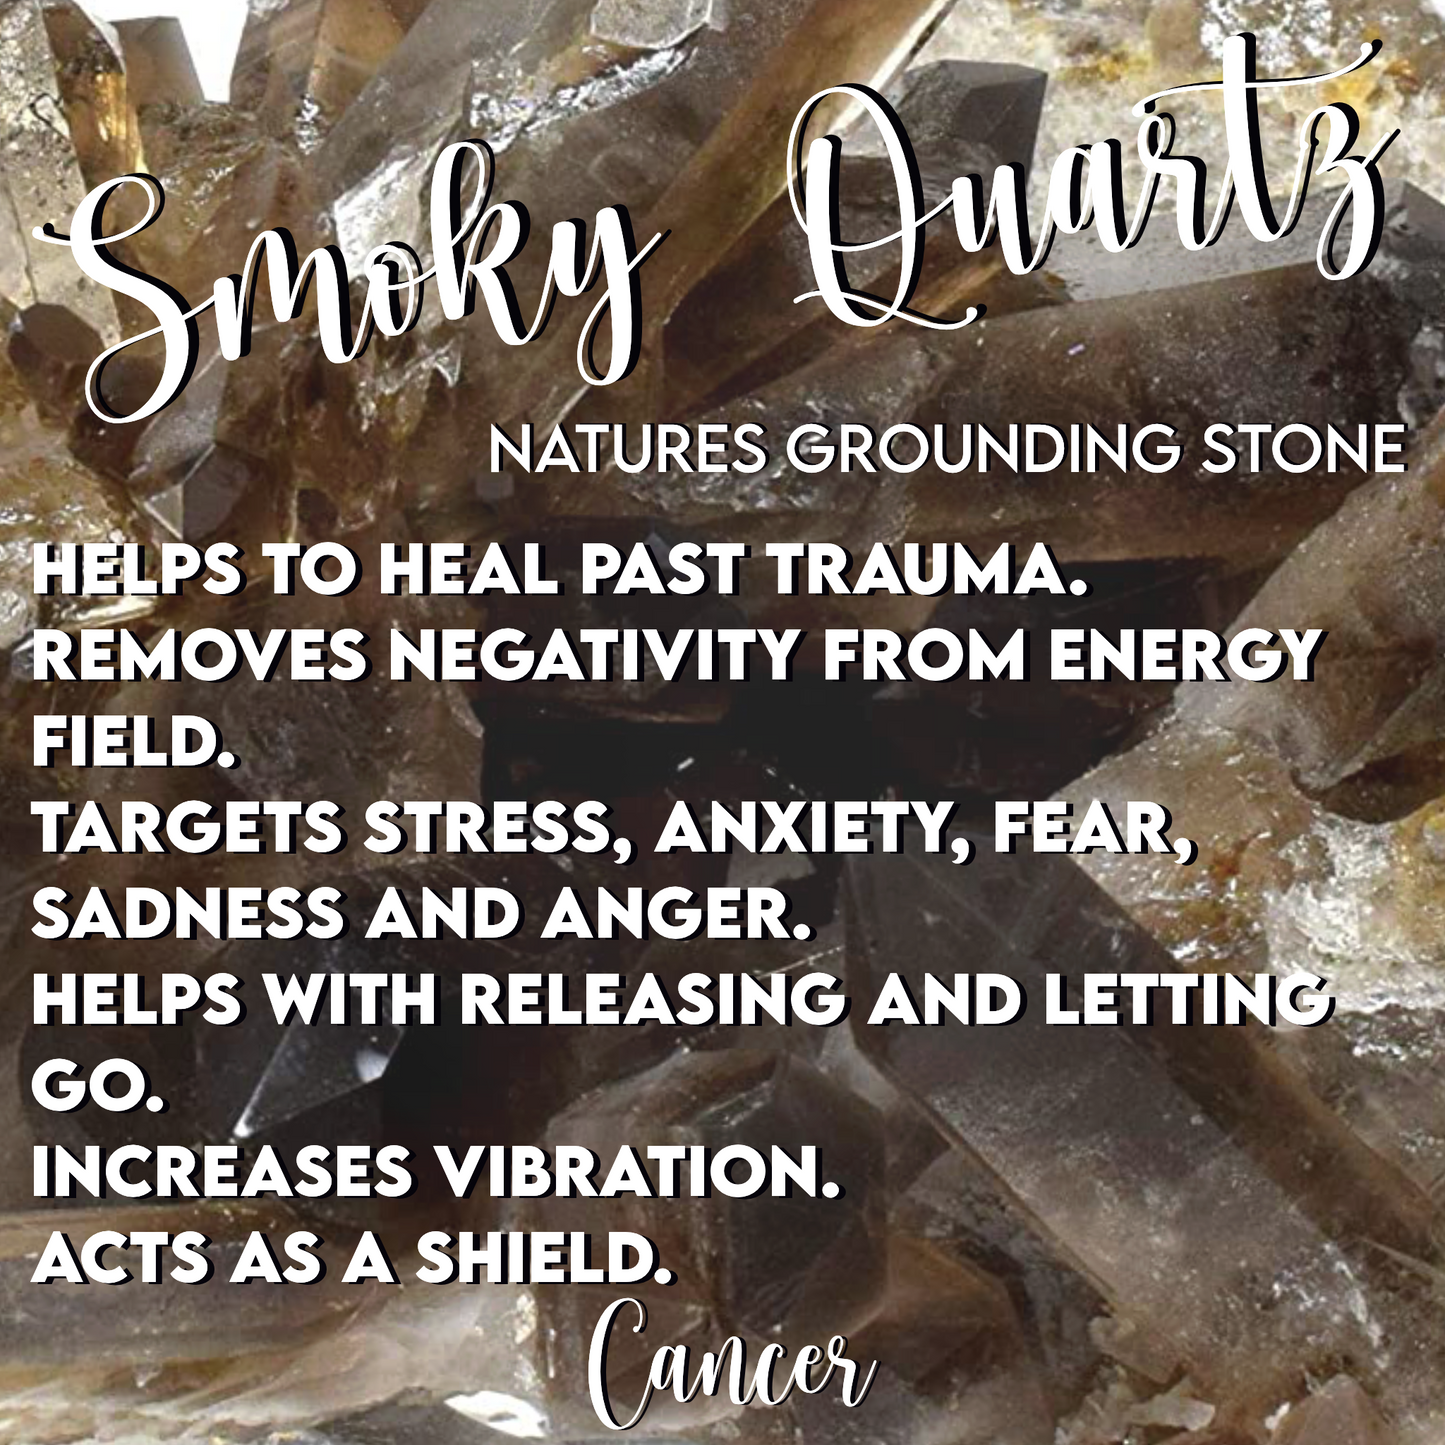 Smoky Quartz Tumbles- Natures Grounding Stone